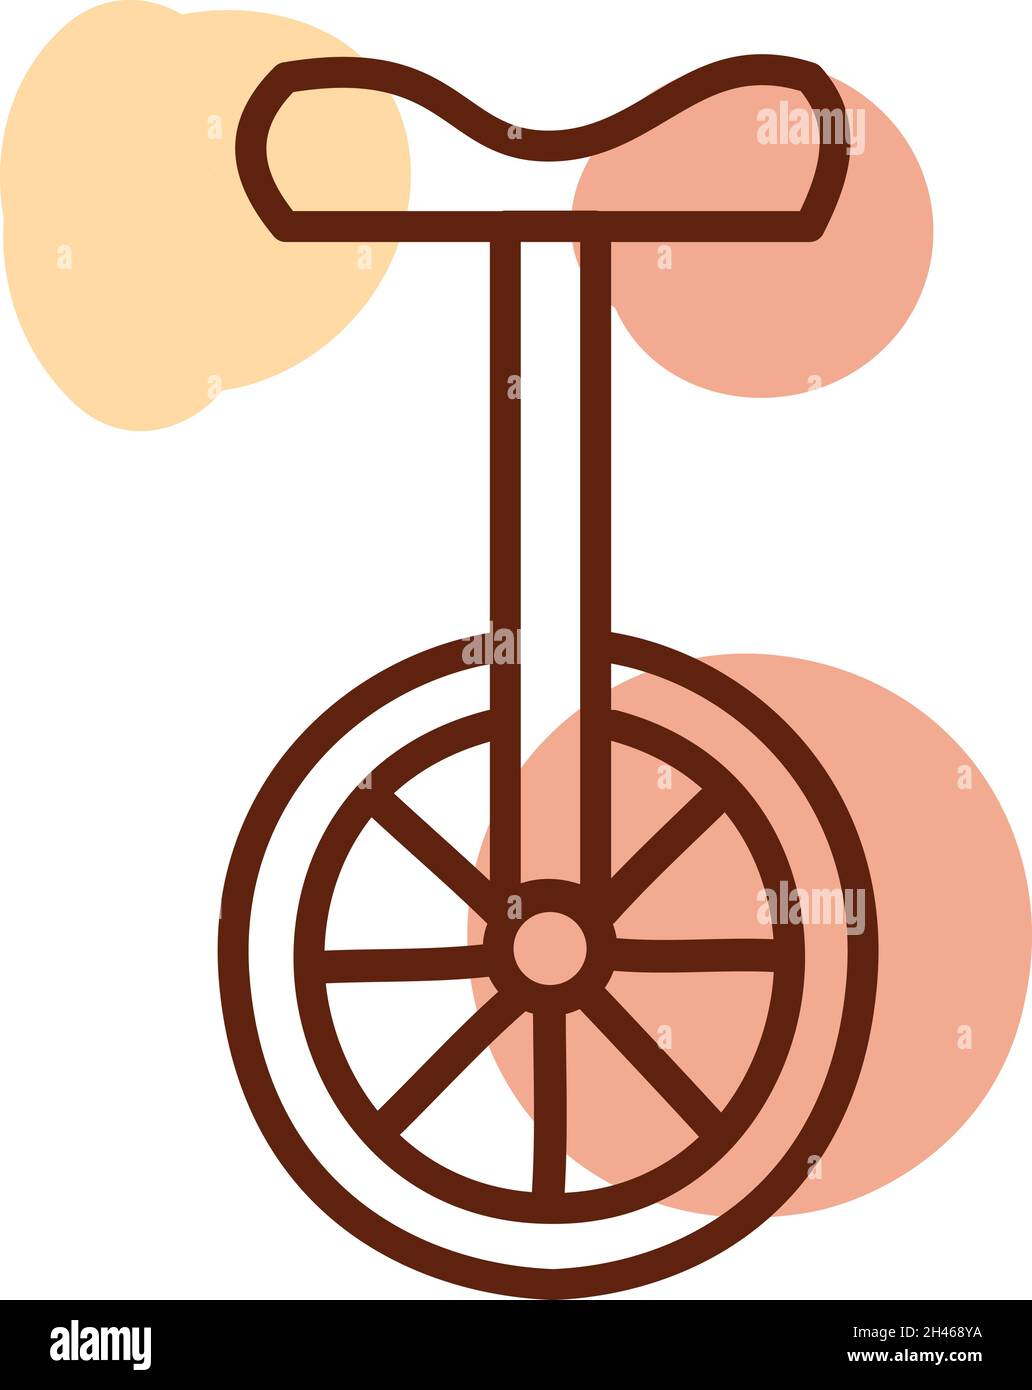 Circus bike Banque d'images vectorielles - Alamy